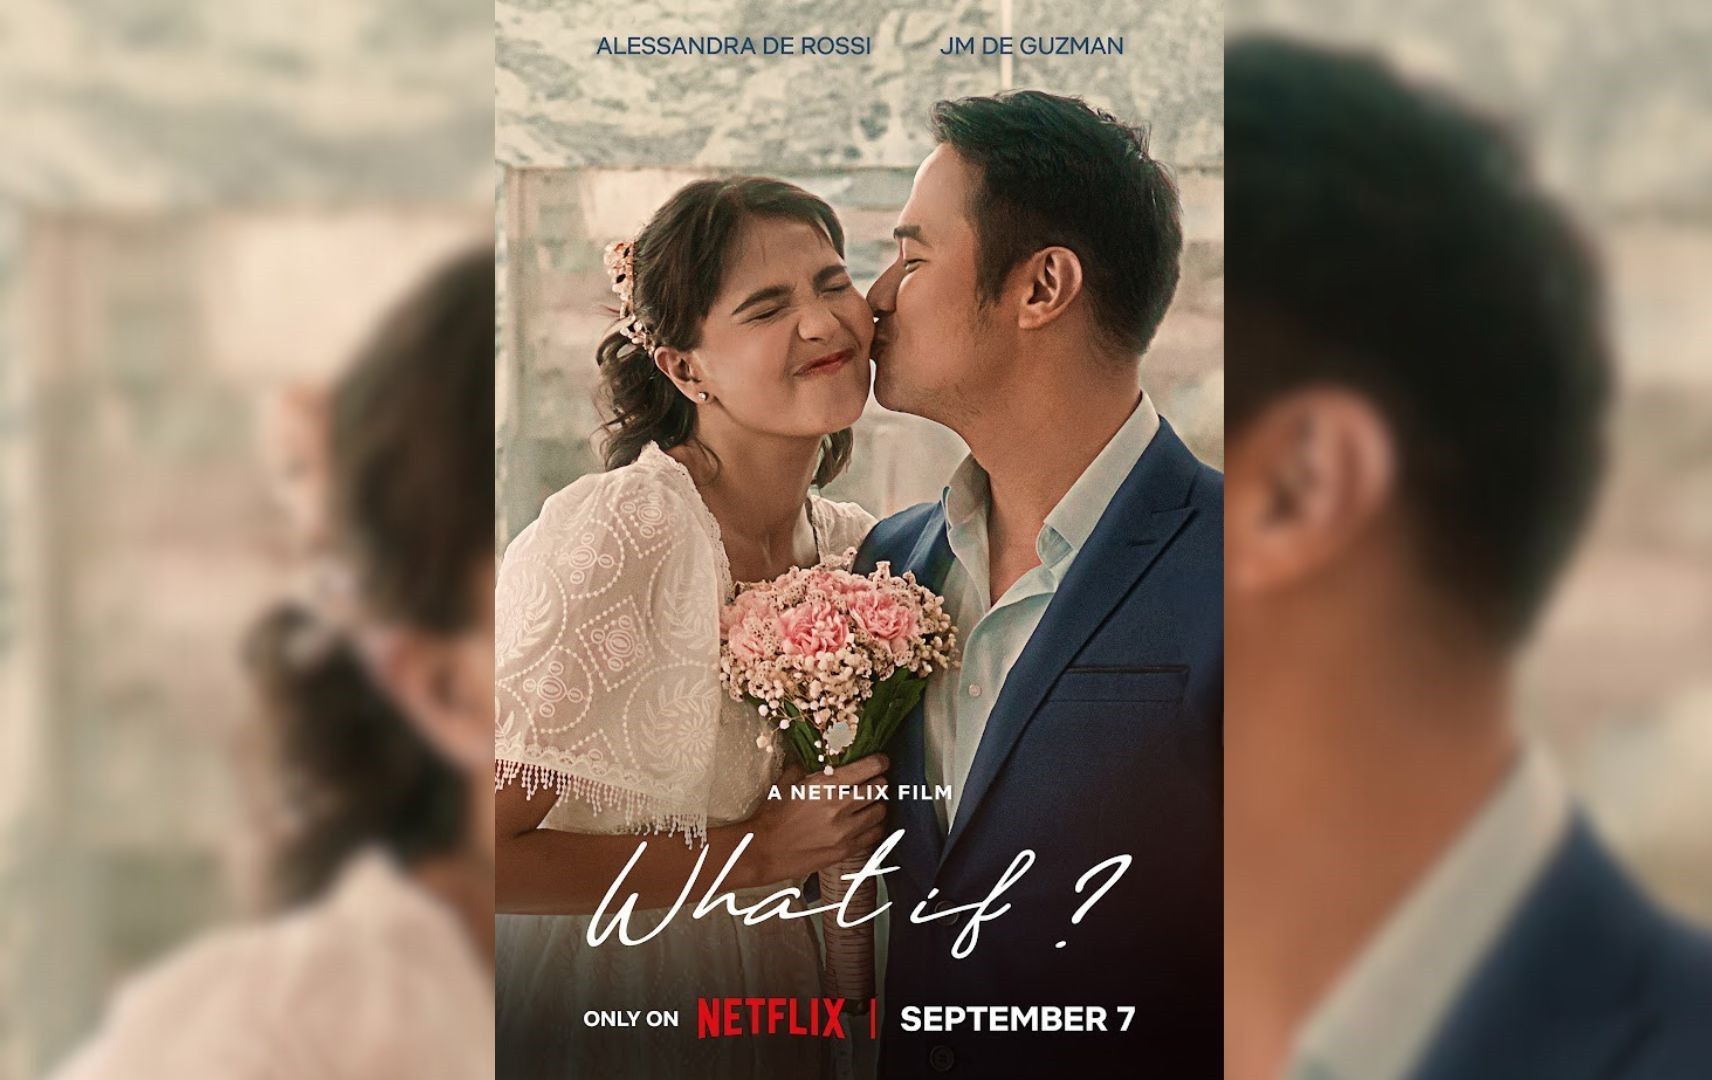 WATCH: Alessandra de Rossi, JM de Guzman in Netflix's 'What If?' trailer